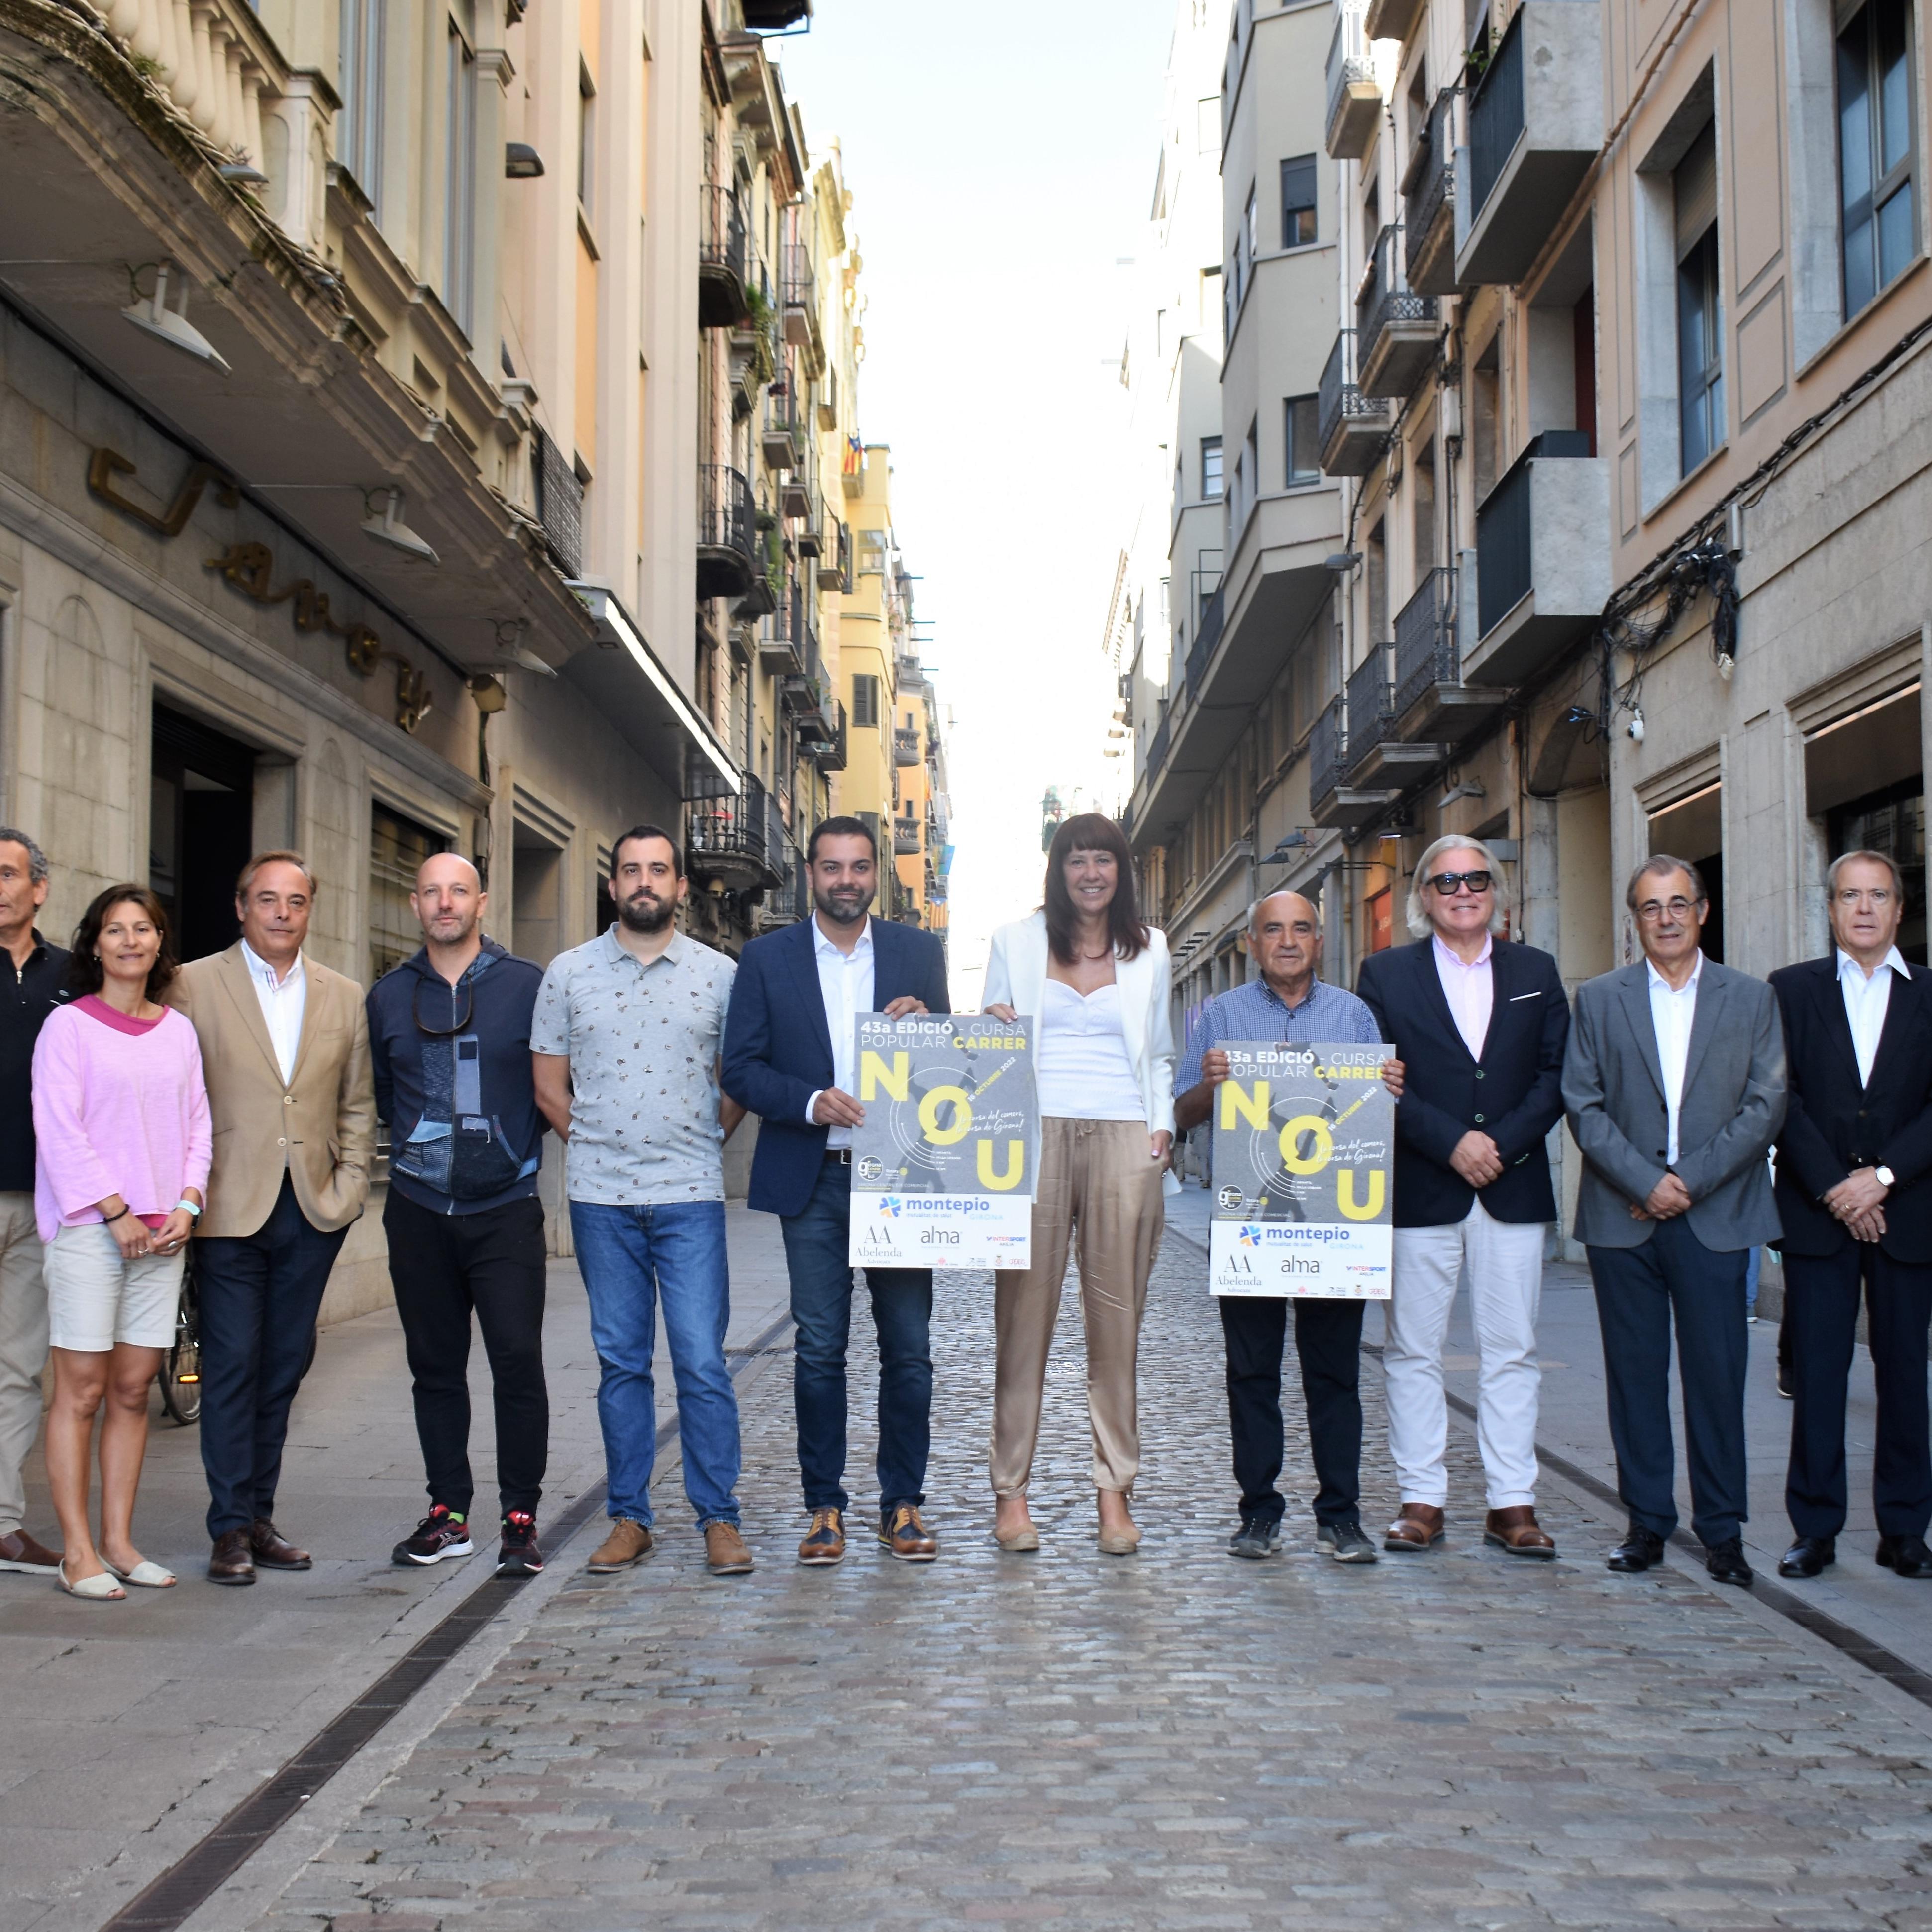 La Cursa Popular del Carrer Nou, la primera de Girona en incorporar els certificats digitals col·leccionables (NFT) amb el temps de cada  corredor